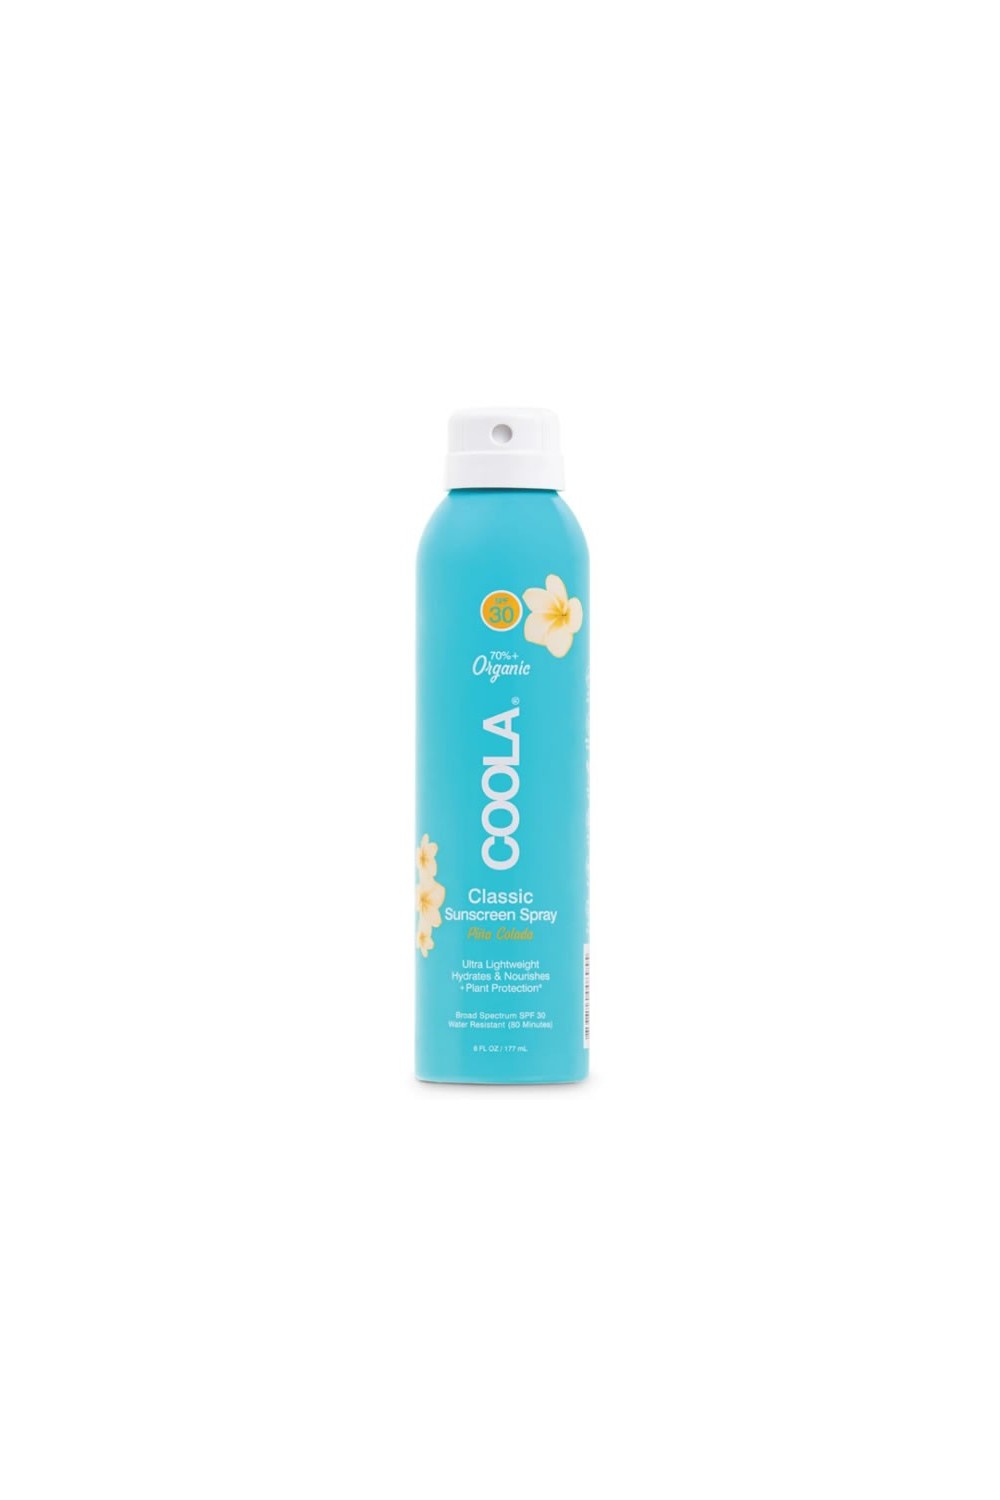 Coola Classic Body Organic Sunscreen Spray Spf30 Piña Colada 177ml